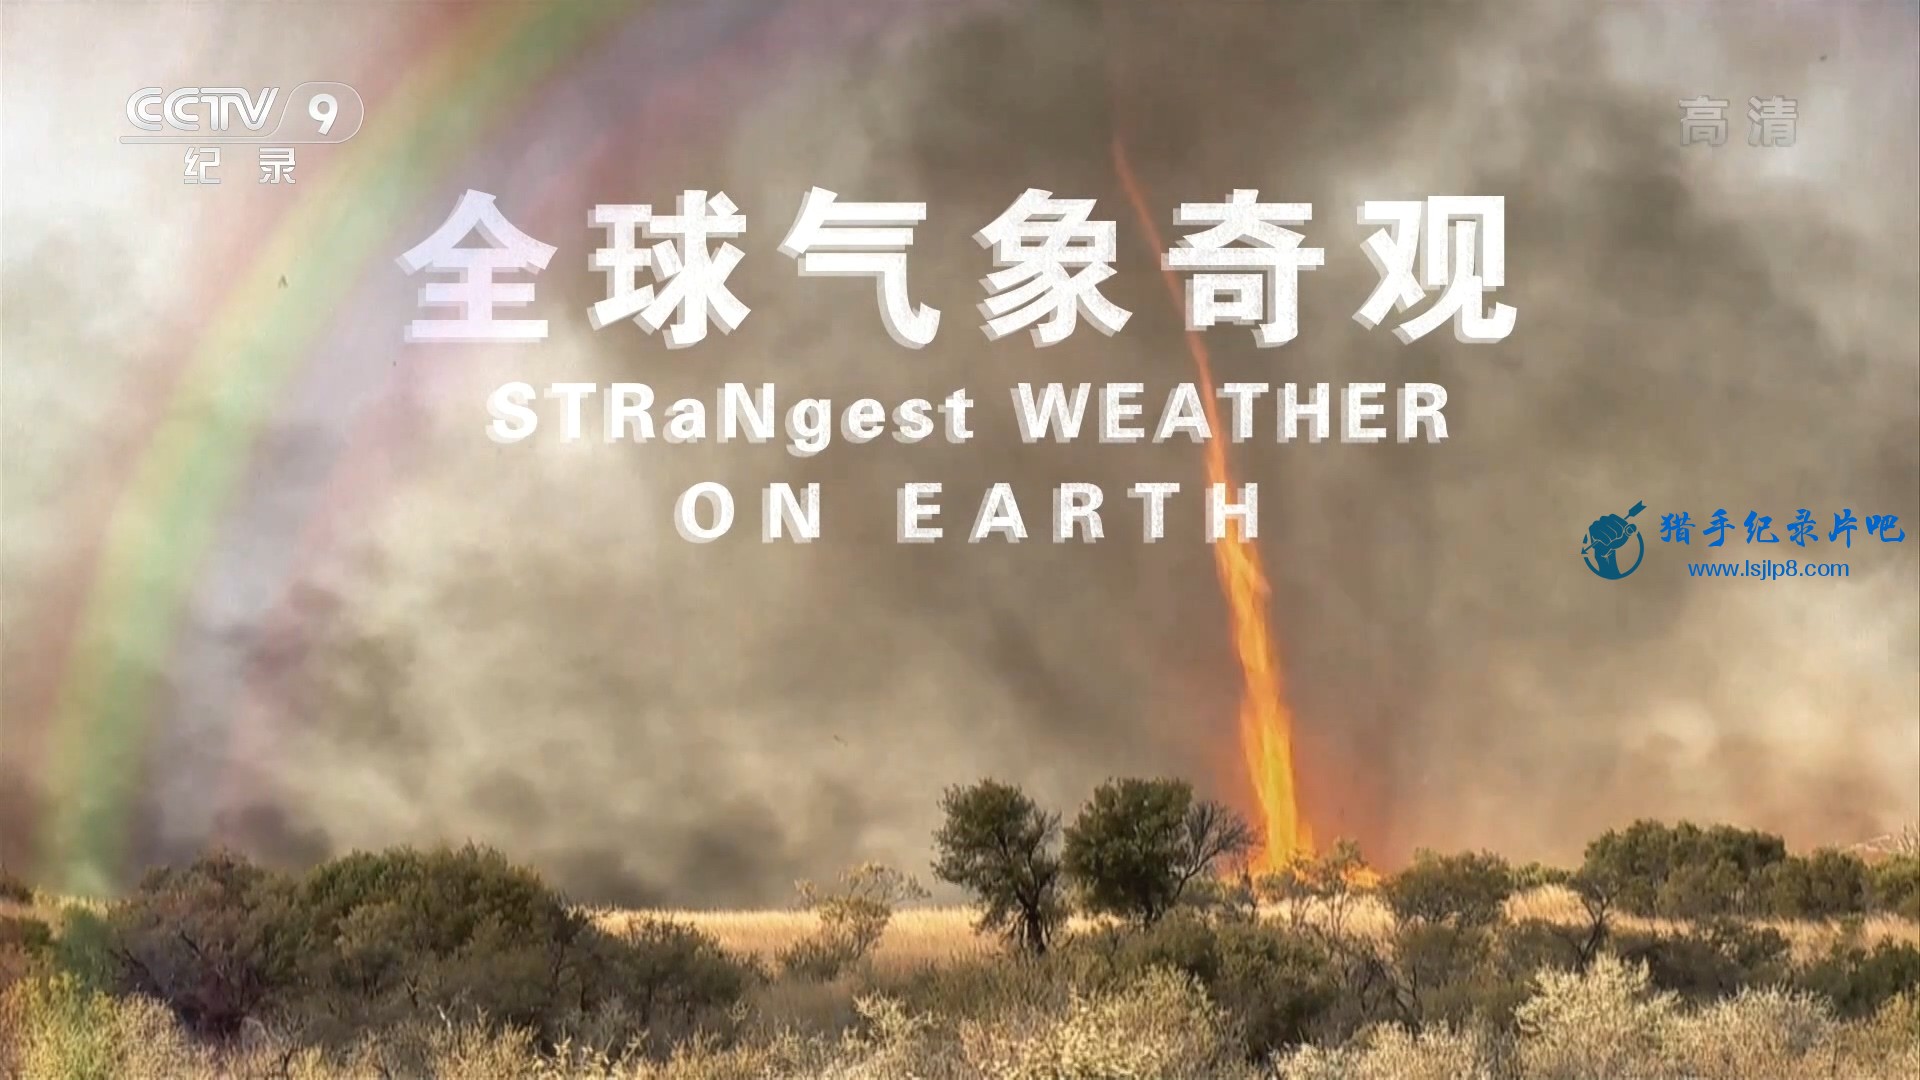 Strangest.Weather.on.Earth.2013.E01-E03.Mandarin.1080i.CCTV9.HDTV.H.264.MPEG-FLT.jpg